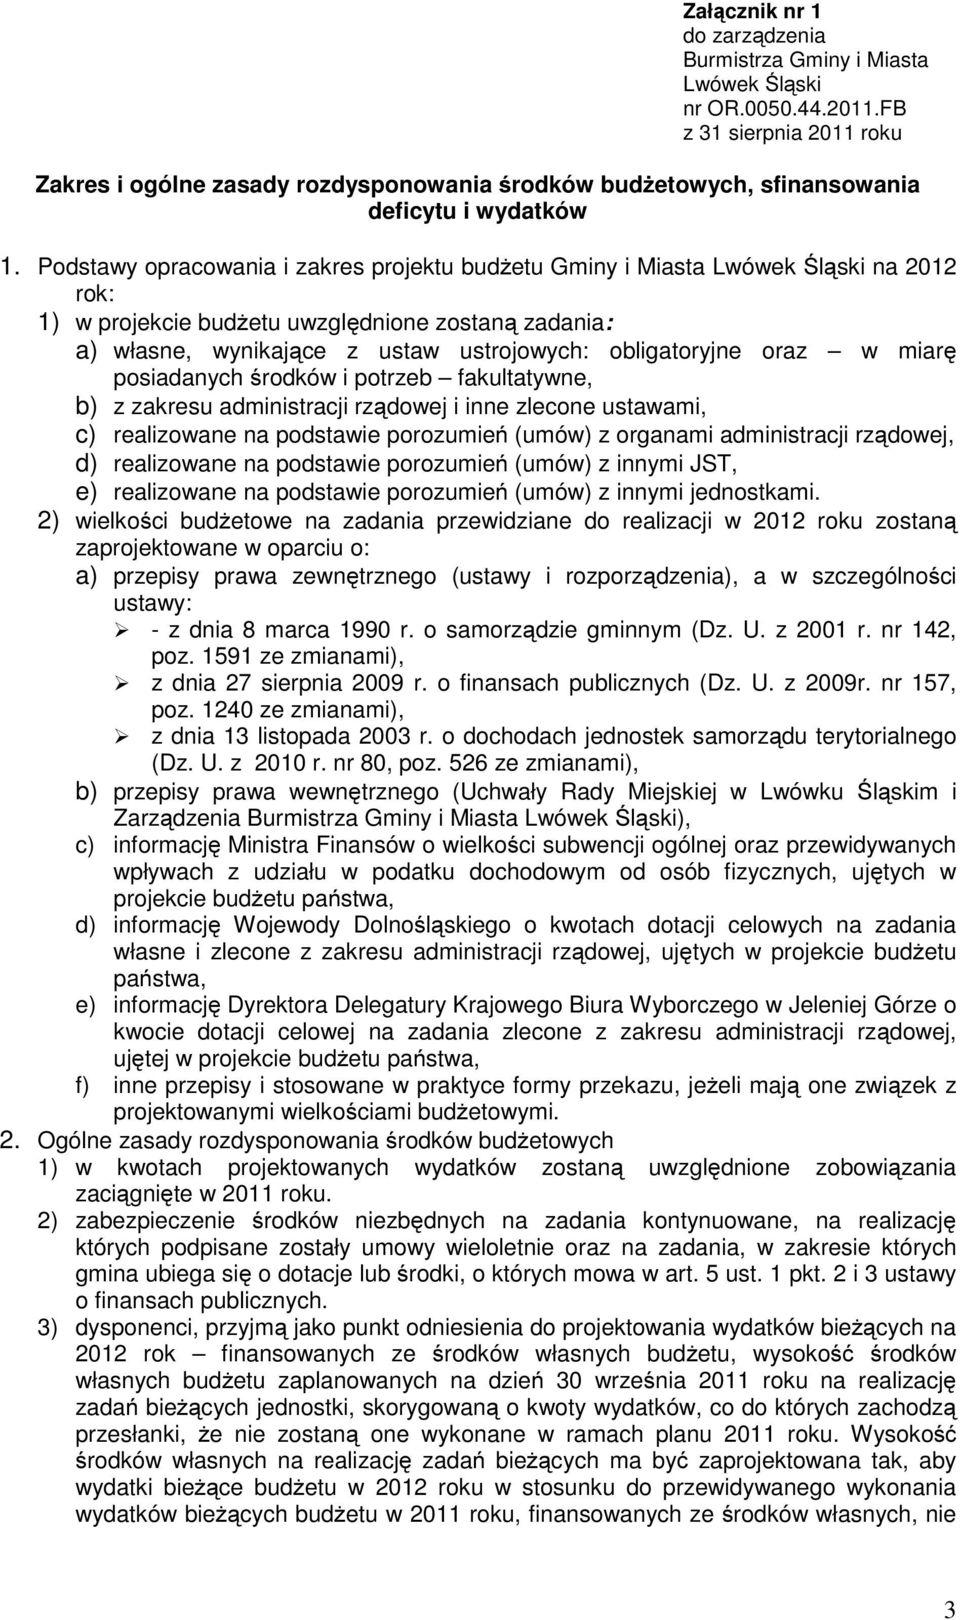 Podstawy opracowania i zakres projektu budżetu Gminy i Miasta Lwówek Śląski na 2012 rok: 1) w projekcie budżetu uwzględnione zostaną zadania: a) własne, wynikające z ustaw ustrojowych: obligatoryjne